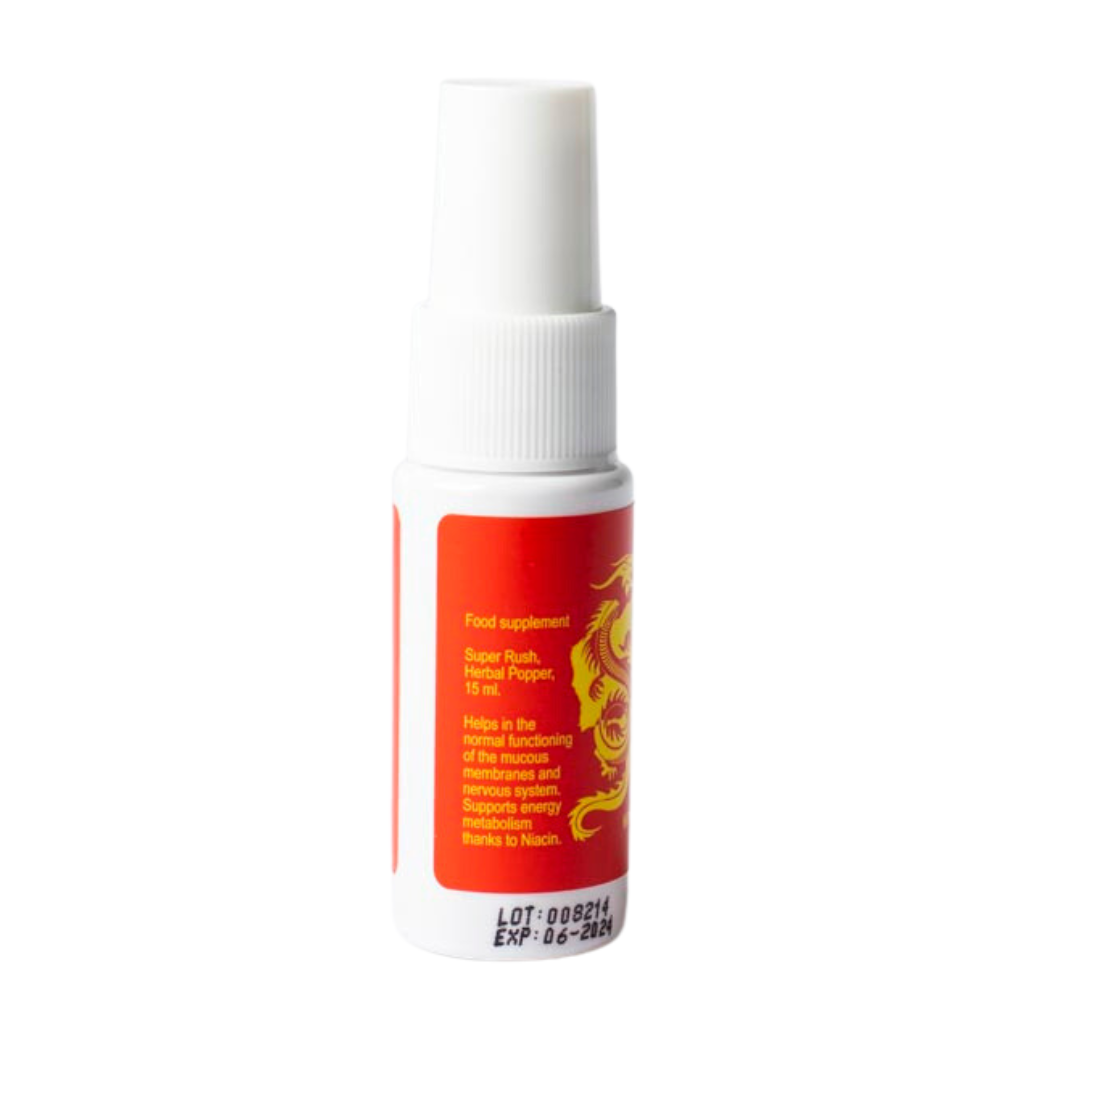 Spray met Super Rush Herbal Poppers van het merk VitaVero. Te koop bij Flavourez.